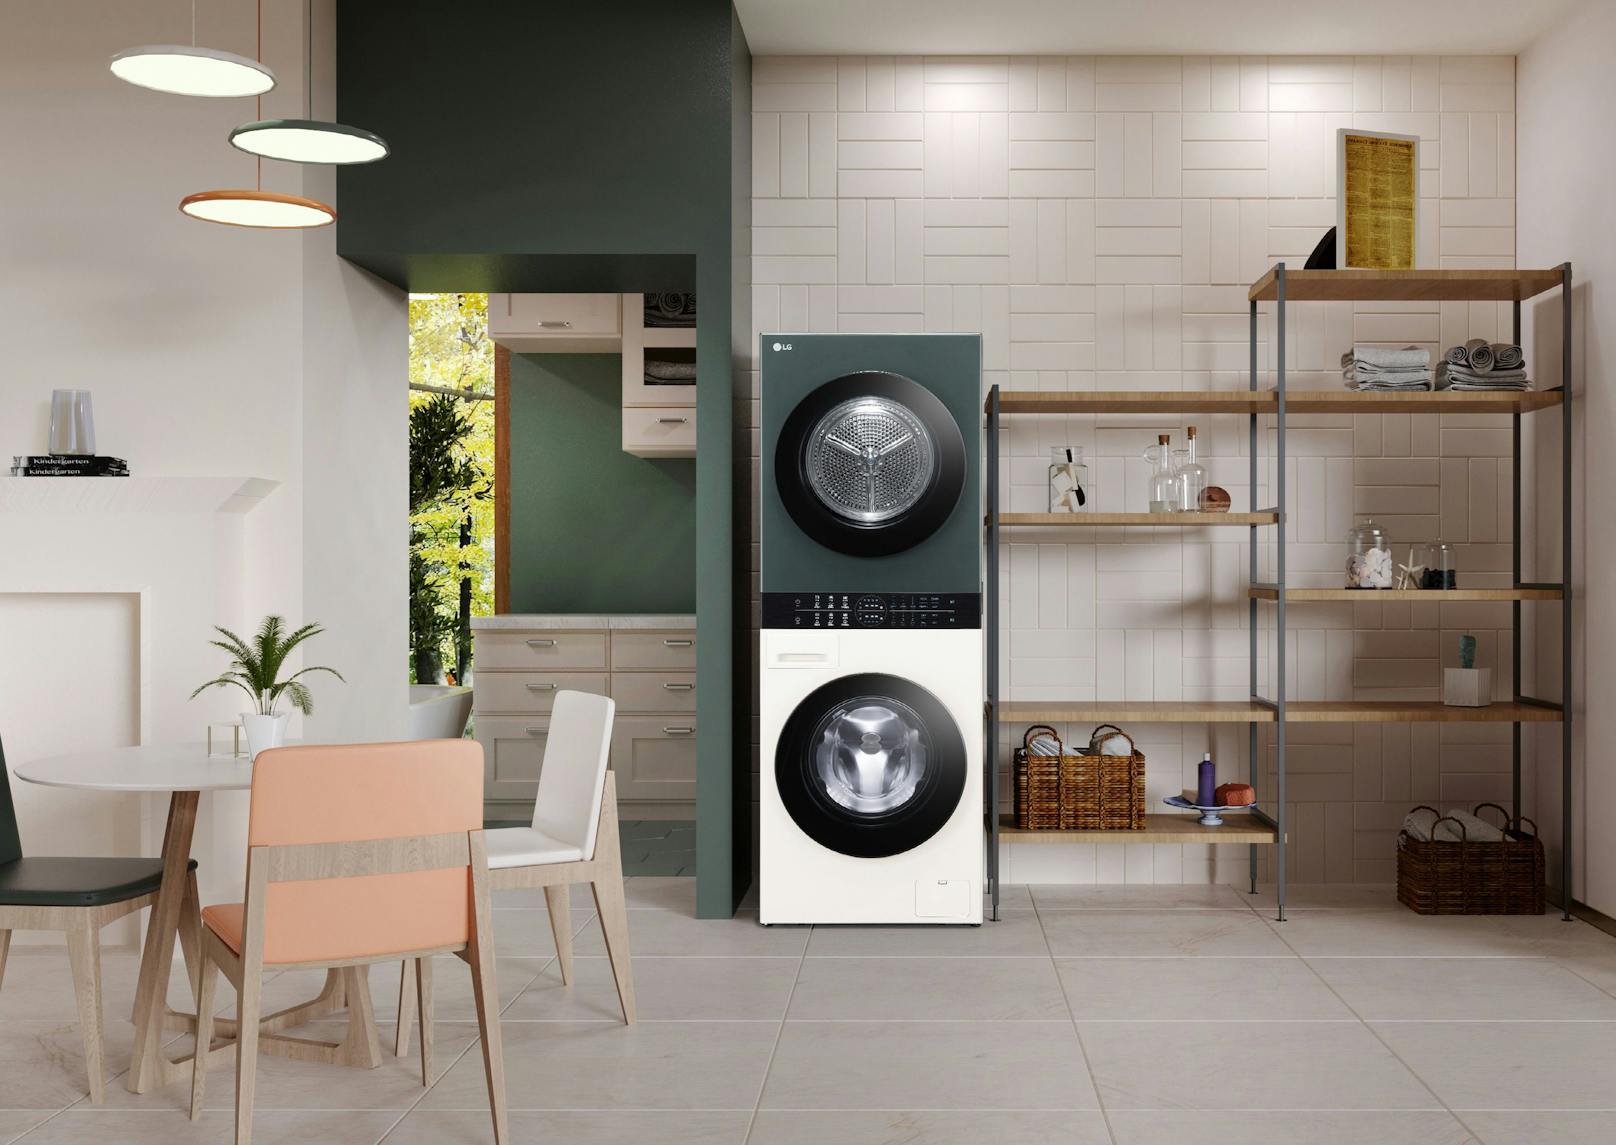 LG präsentiert das All-in-One Wascherlebnis mit dem neuen LG WashTower Compact.